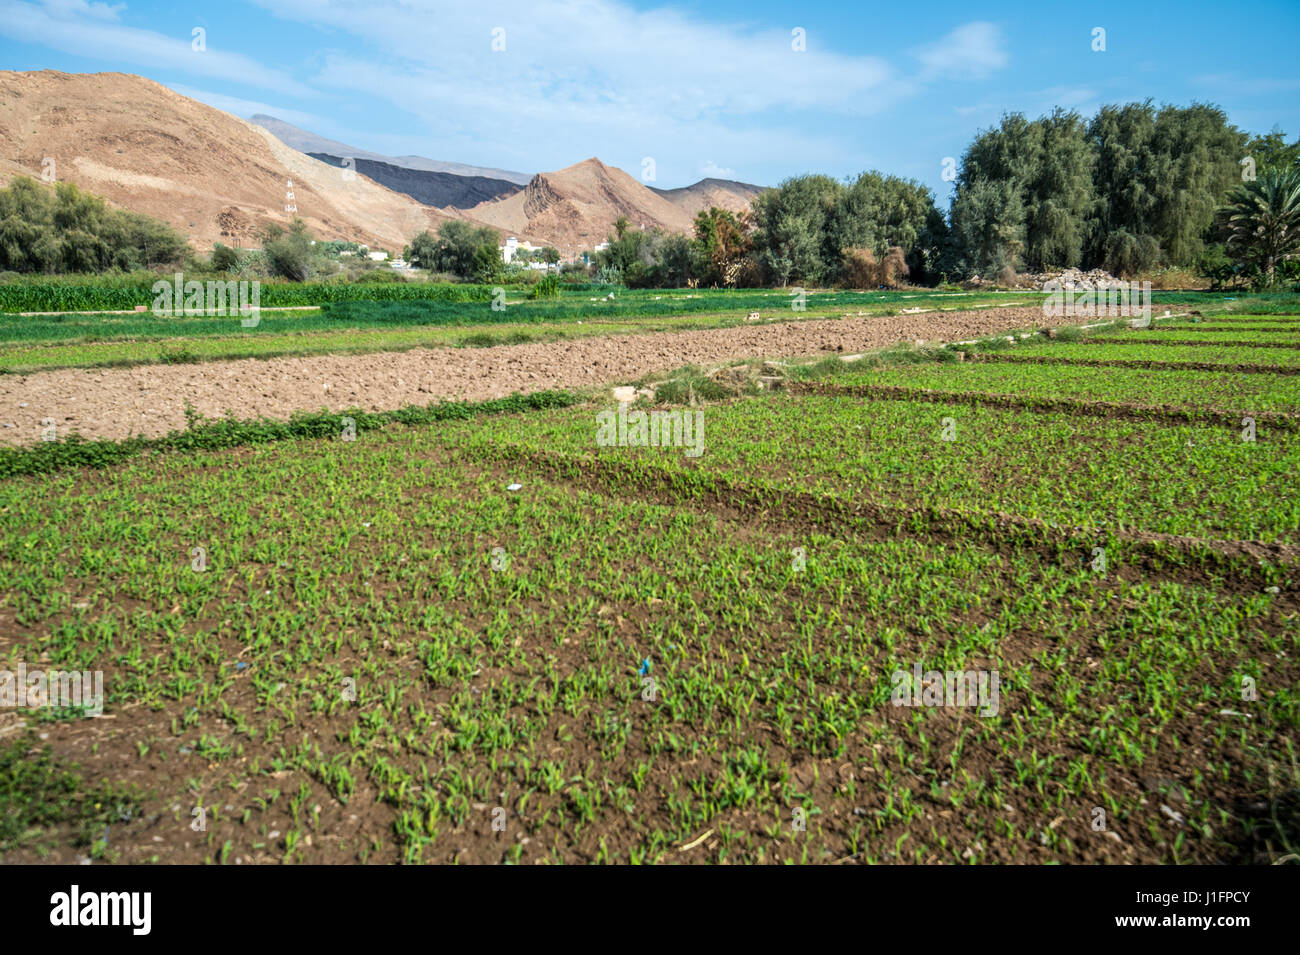 Farming fields at Birkat Al Mouz in Oman Stock Photo